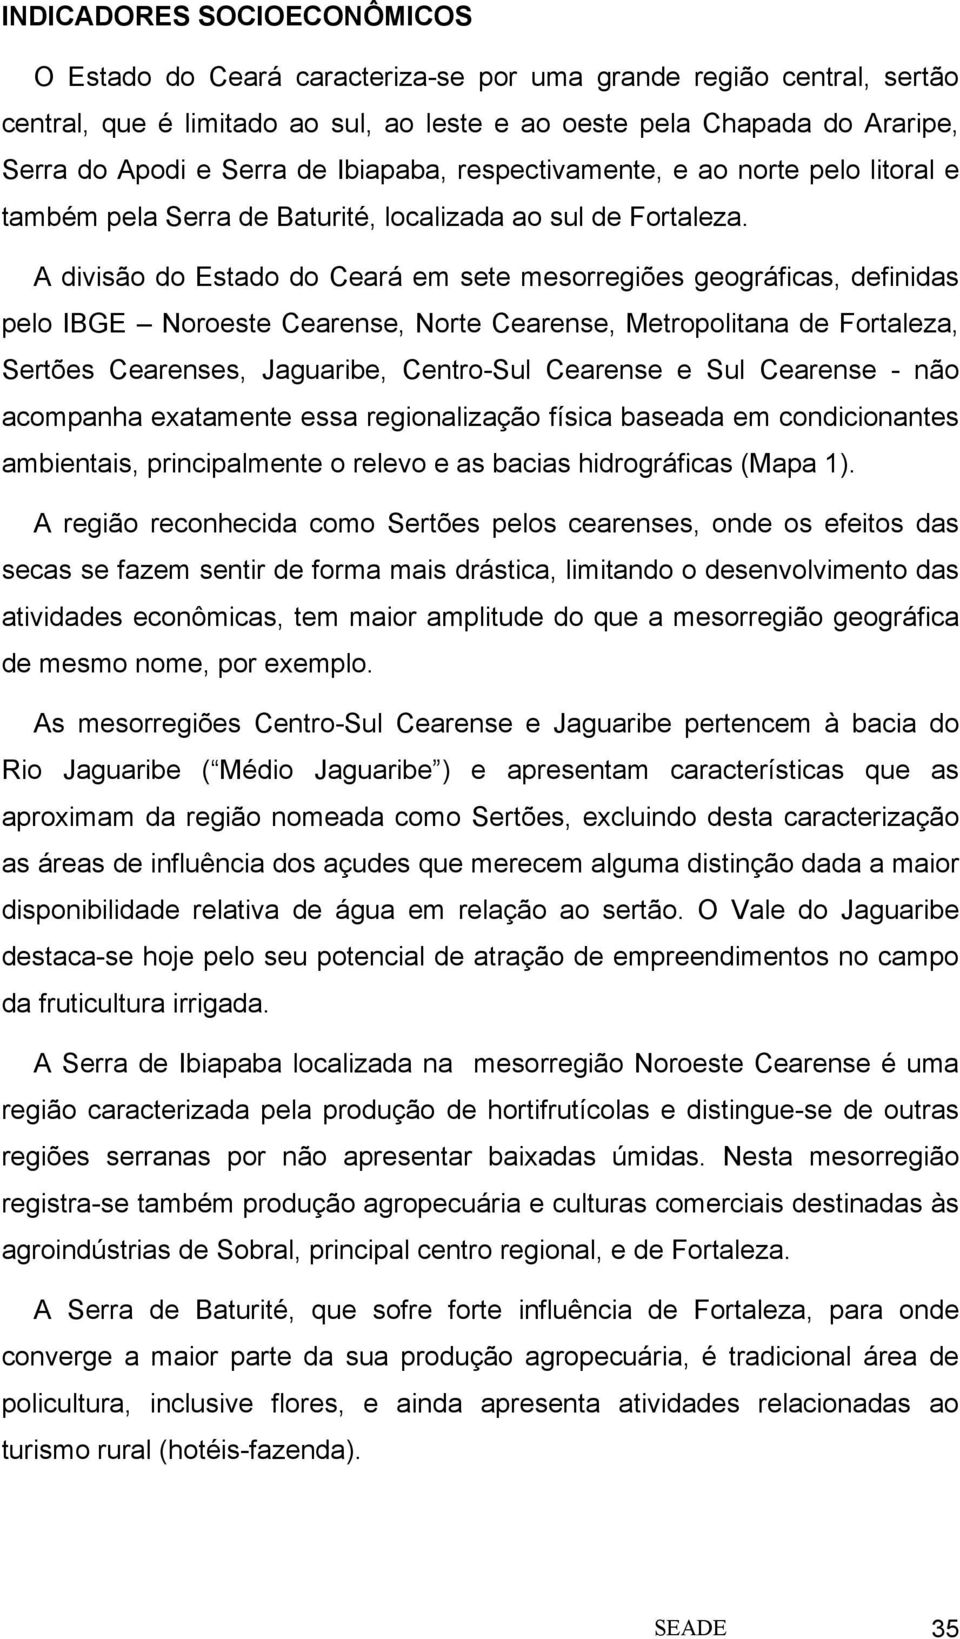 A divisão do Estado do Ceará em sete mesorregiões geográficas, definidas pelo IBGE Noroeste Cearense, Norte Cearense, Metropolitana de Fortaleza, Sertões Cearenses, Jaguaribe, Centro-Sul Cearense e